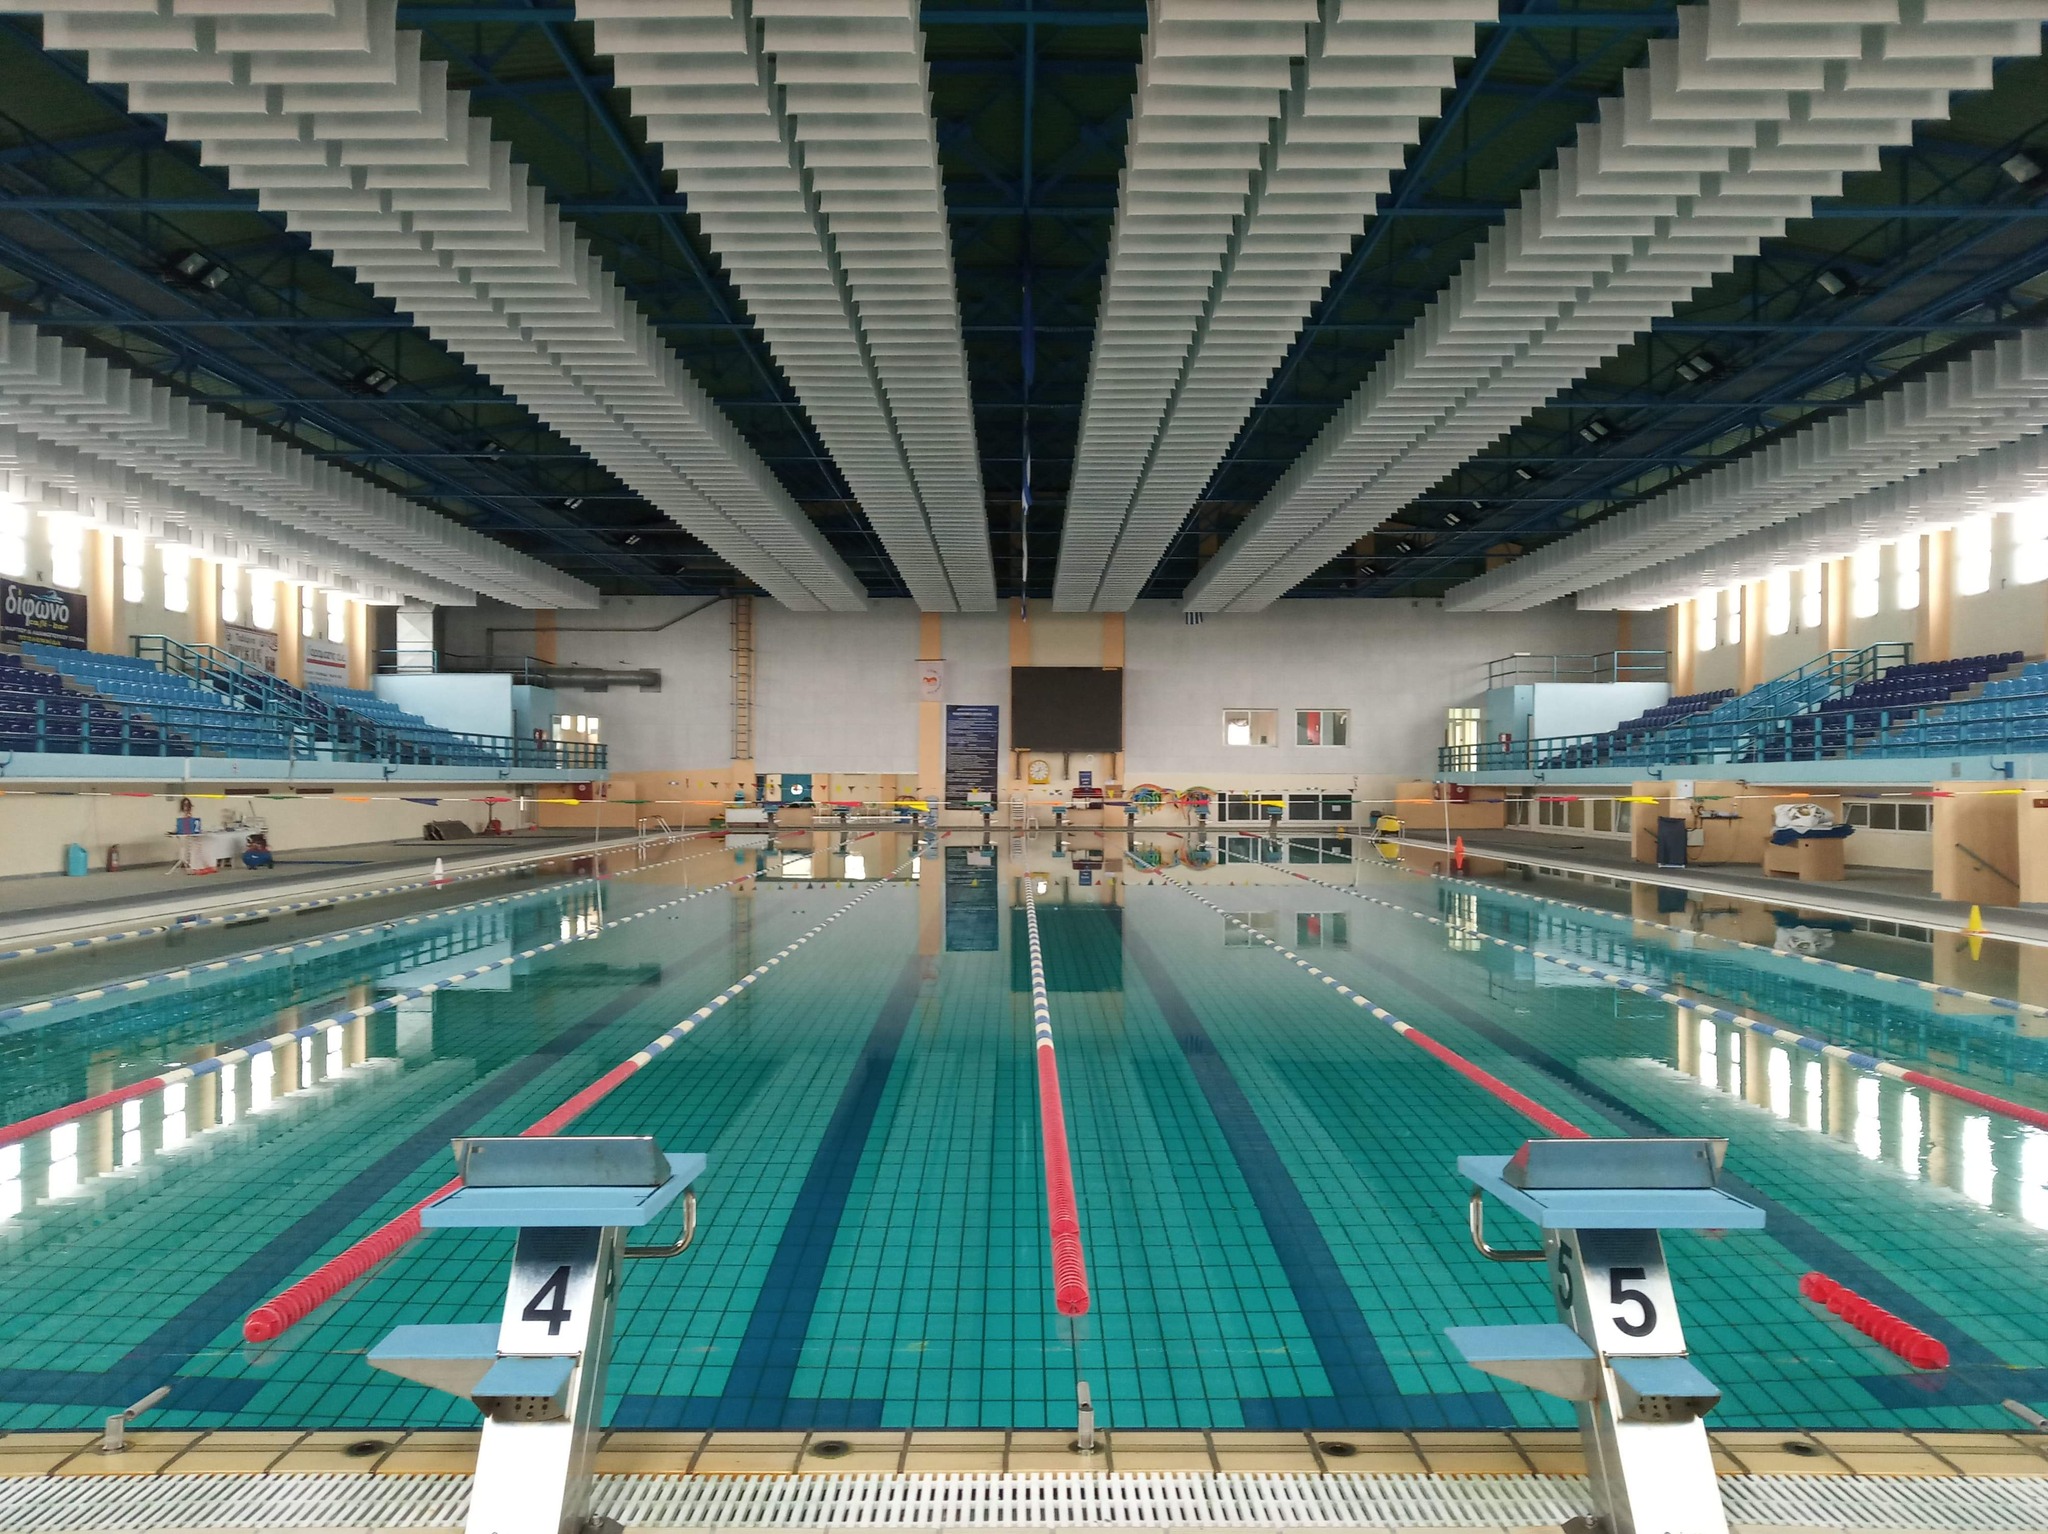 Αθλητική Κολυμβητική Ακαδημία Δελφίνια Πτολεμαΐδας - Πρόσκληση εκδήλωσης ενδιαφέροντος